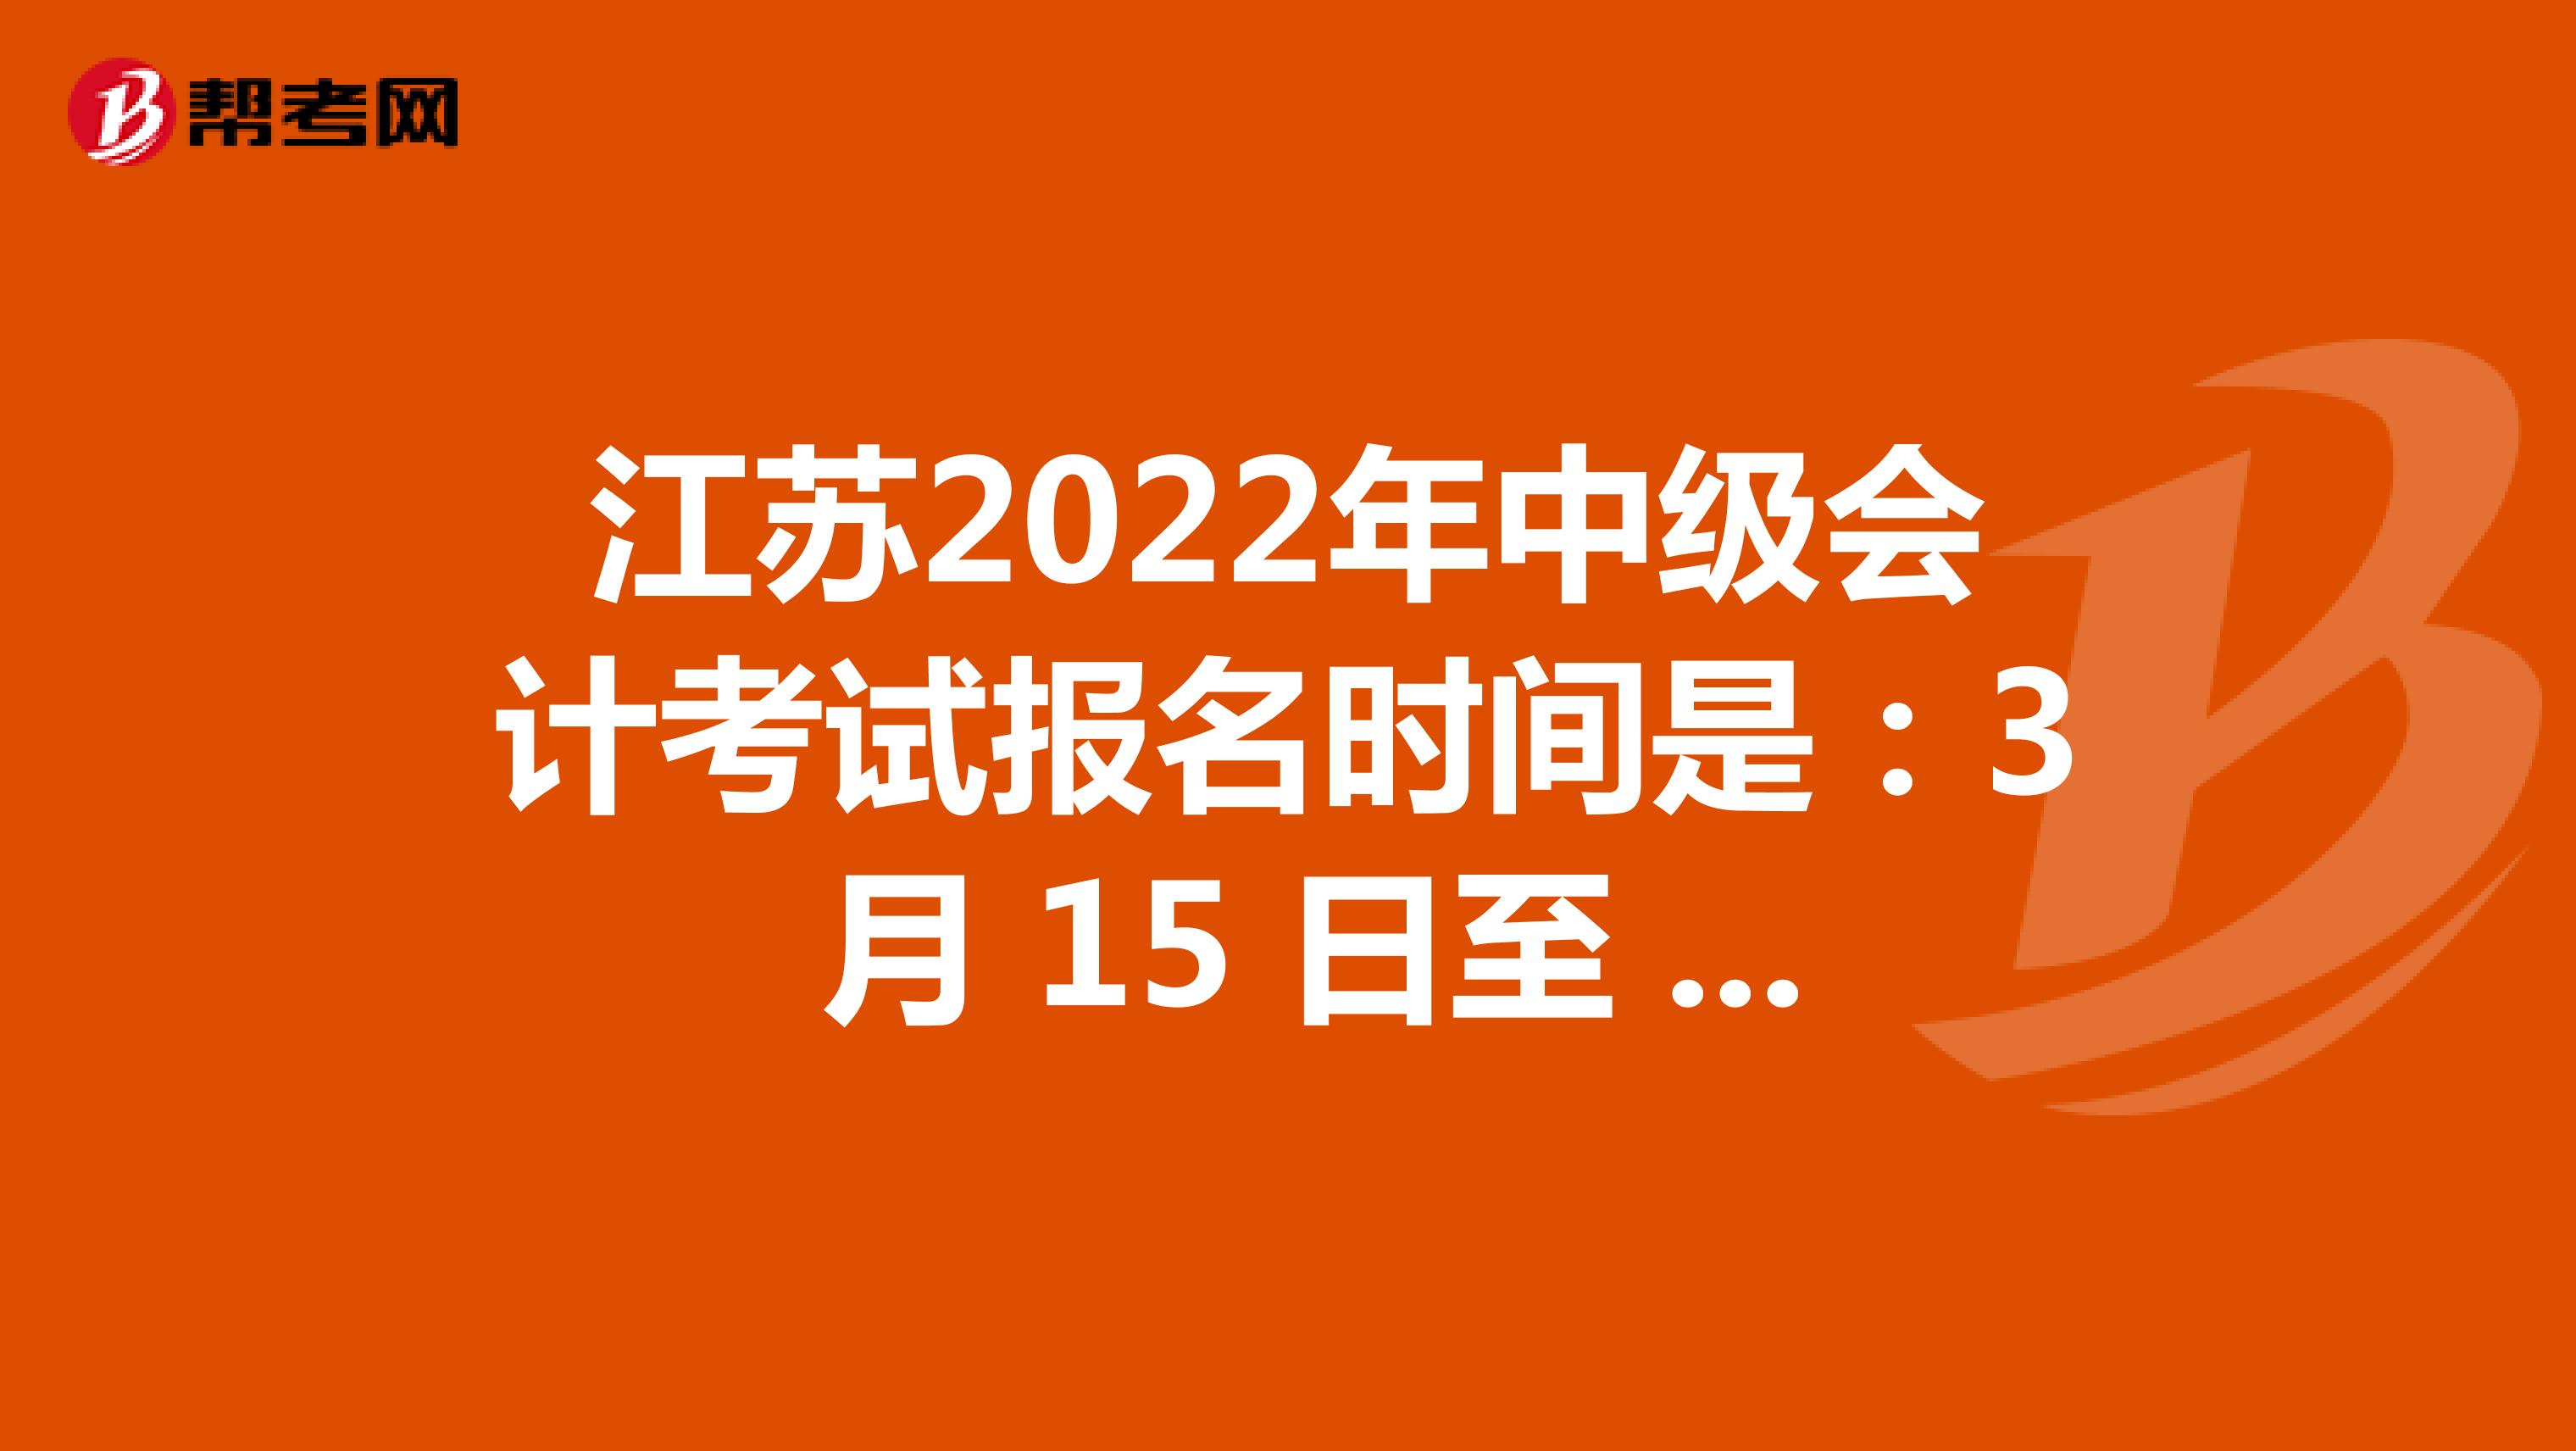 江苏2022年中级会计考试报名时间是：3 月 15 日至 31 日